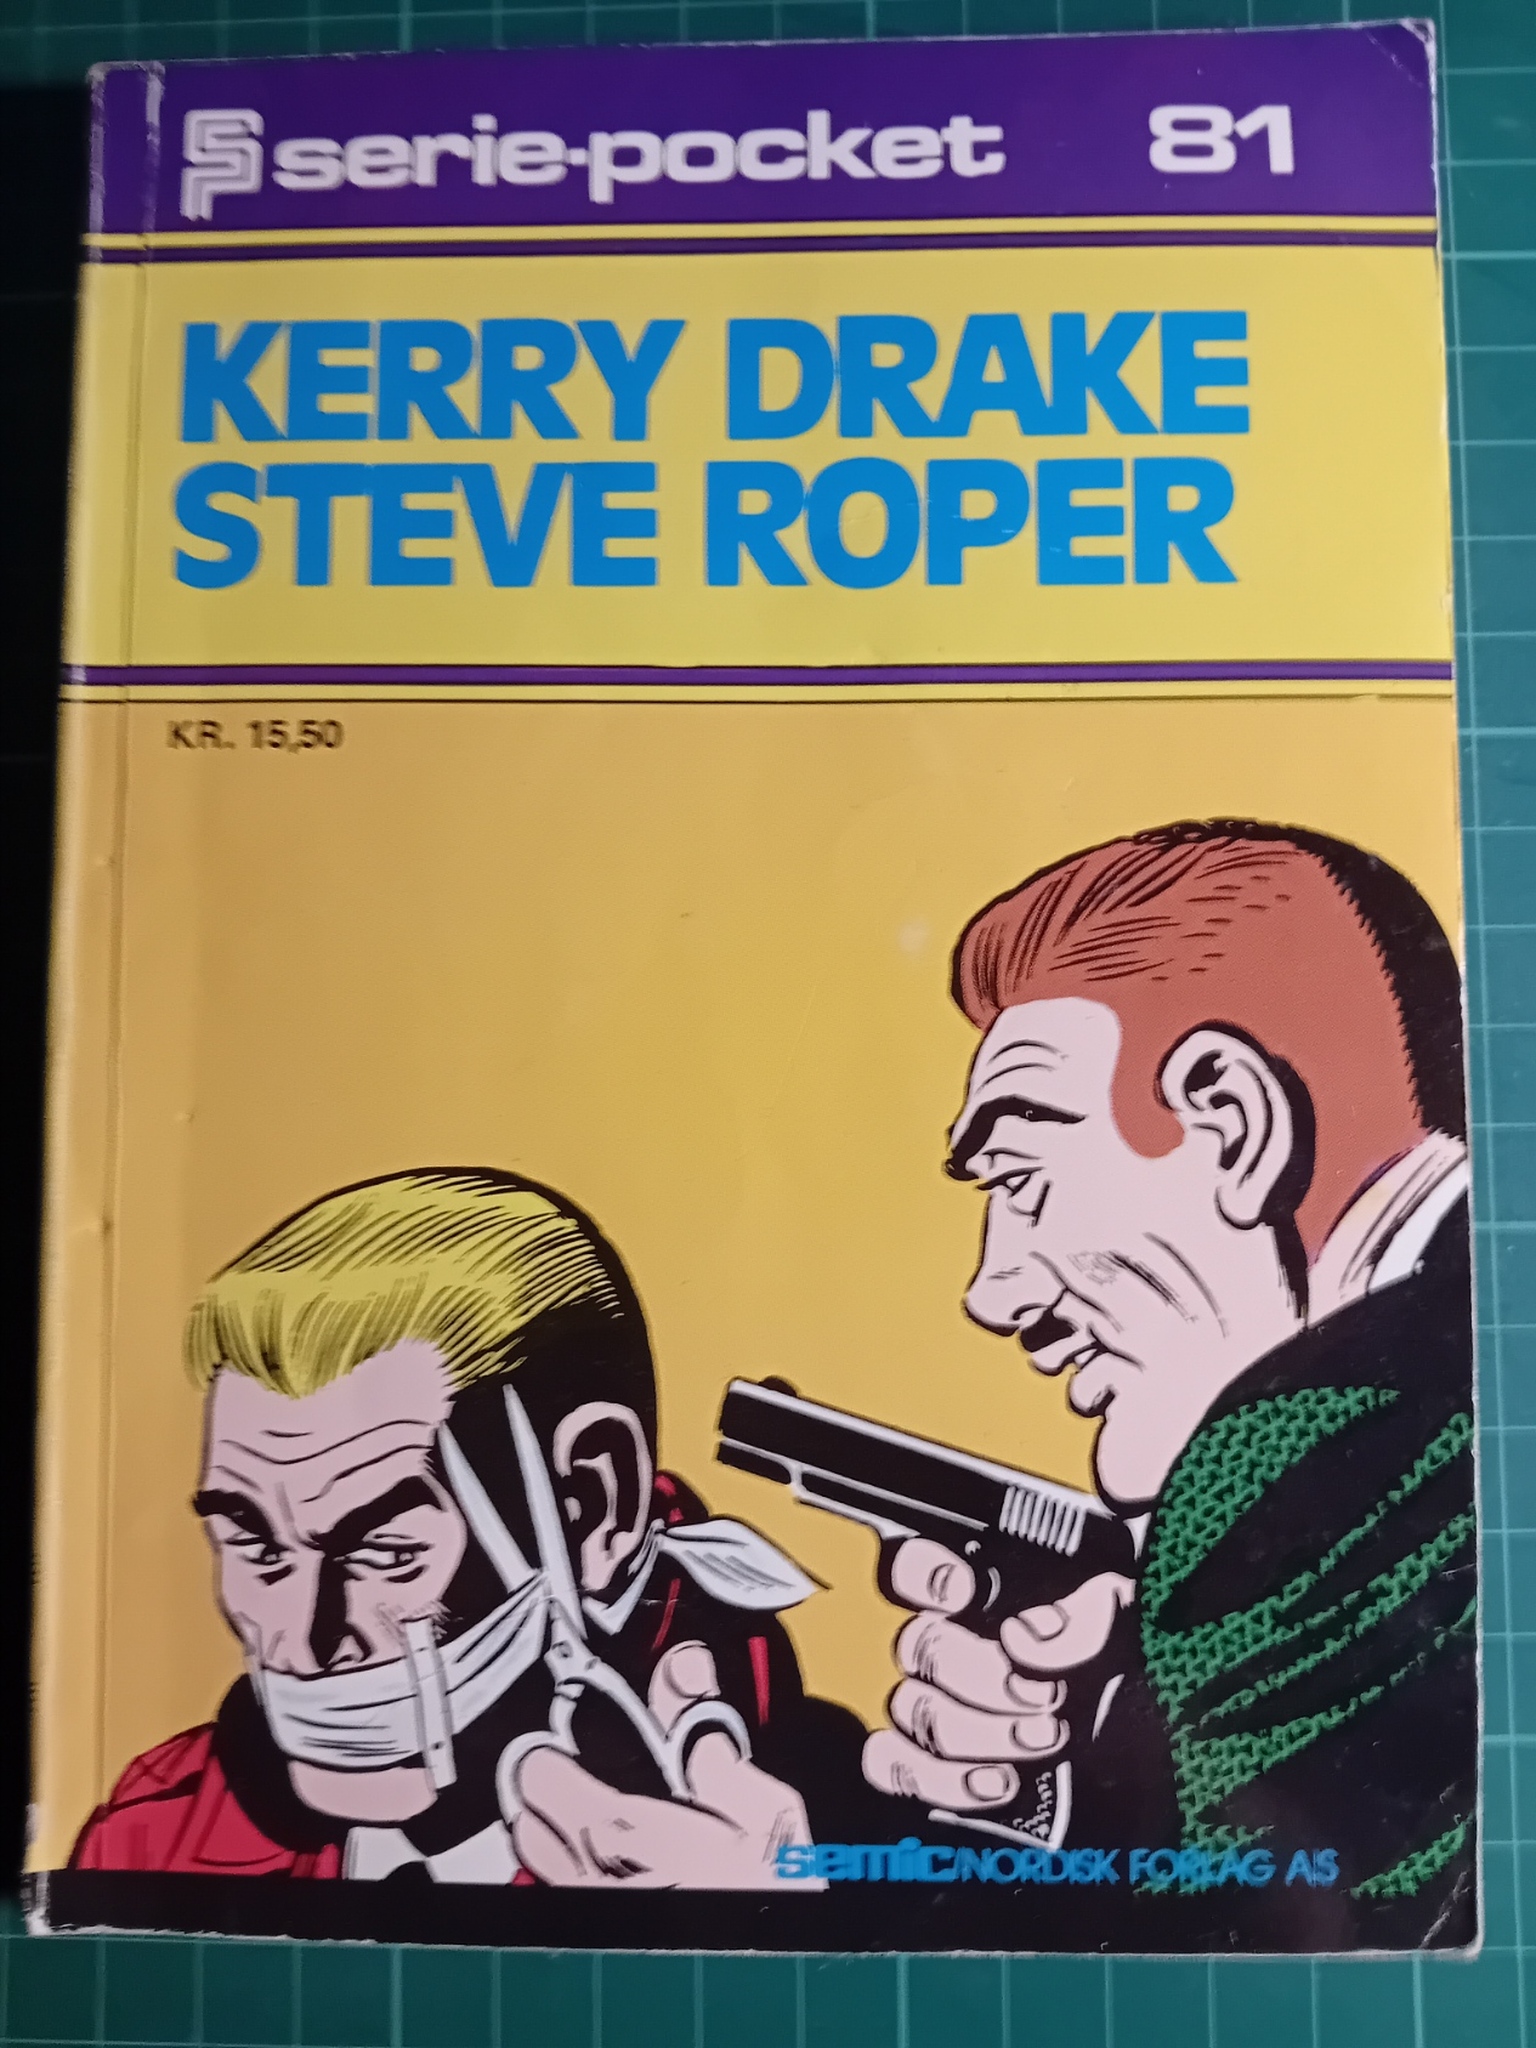 Serie-pocket 081 : Kerry Drake Steve Roper